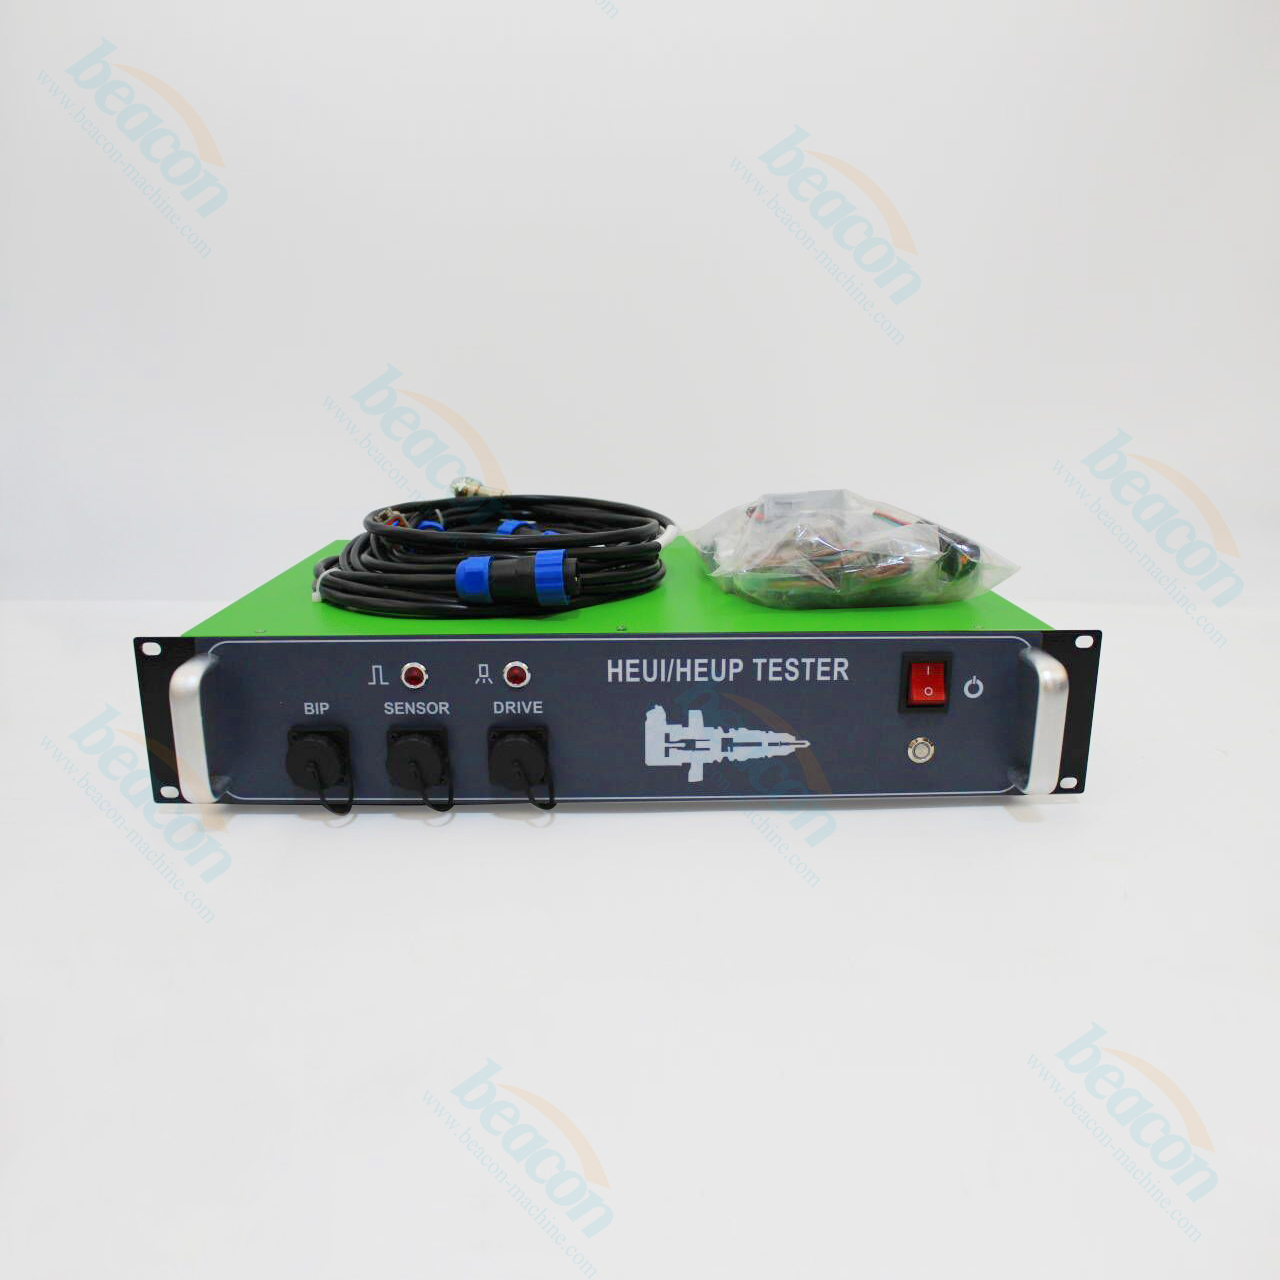 Medidor de prueba Heui heup 320d de alta calidad jeringuilla electrónica hidráulica y medidor de prueba de bomba medidor de prueba piezoeléctrica